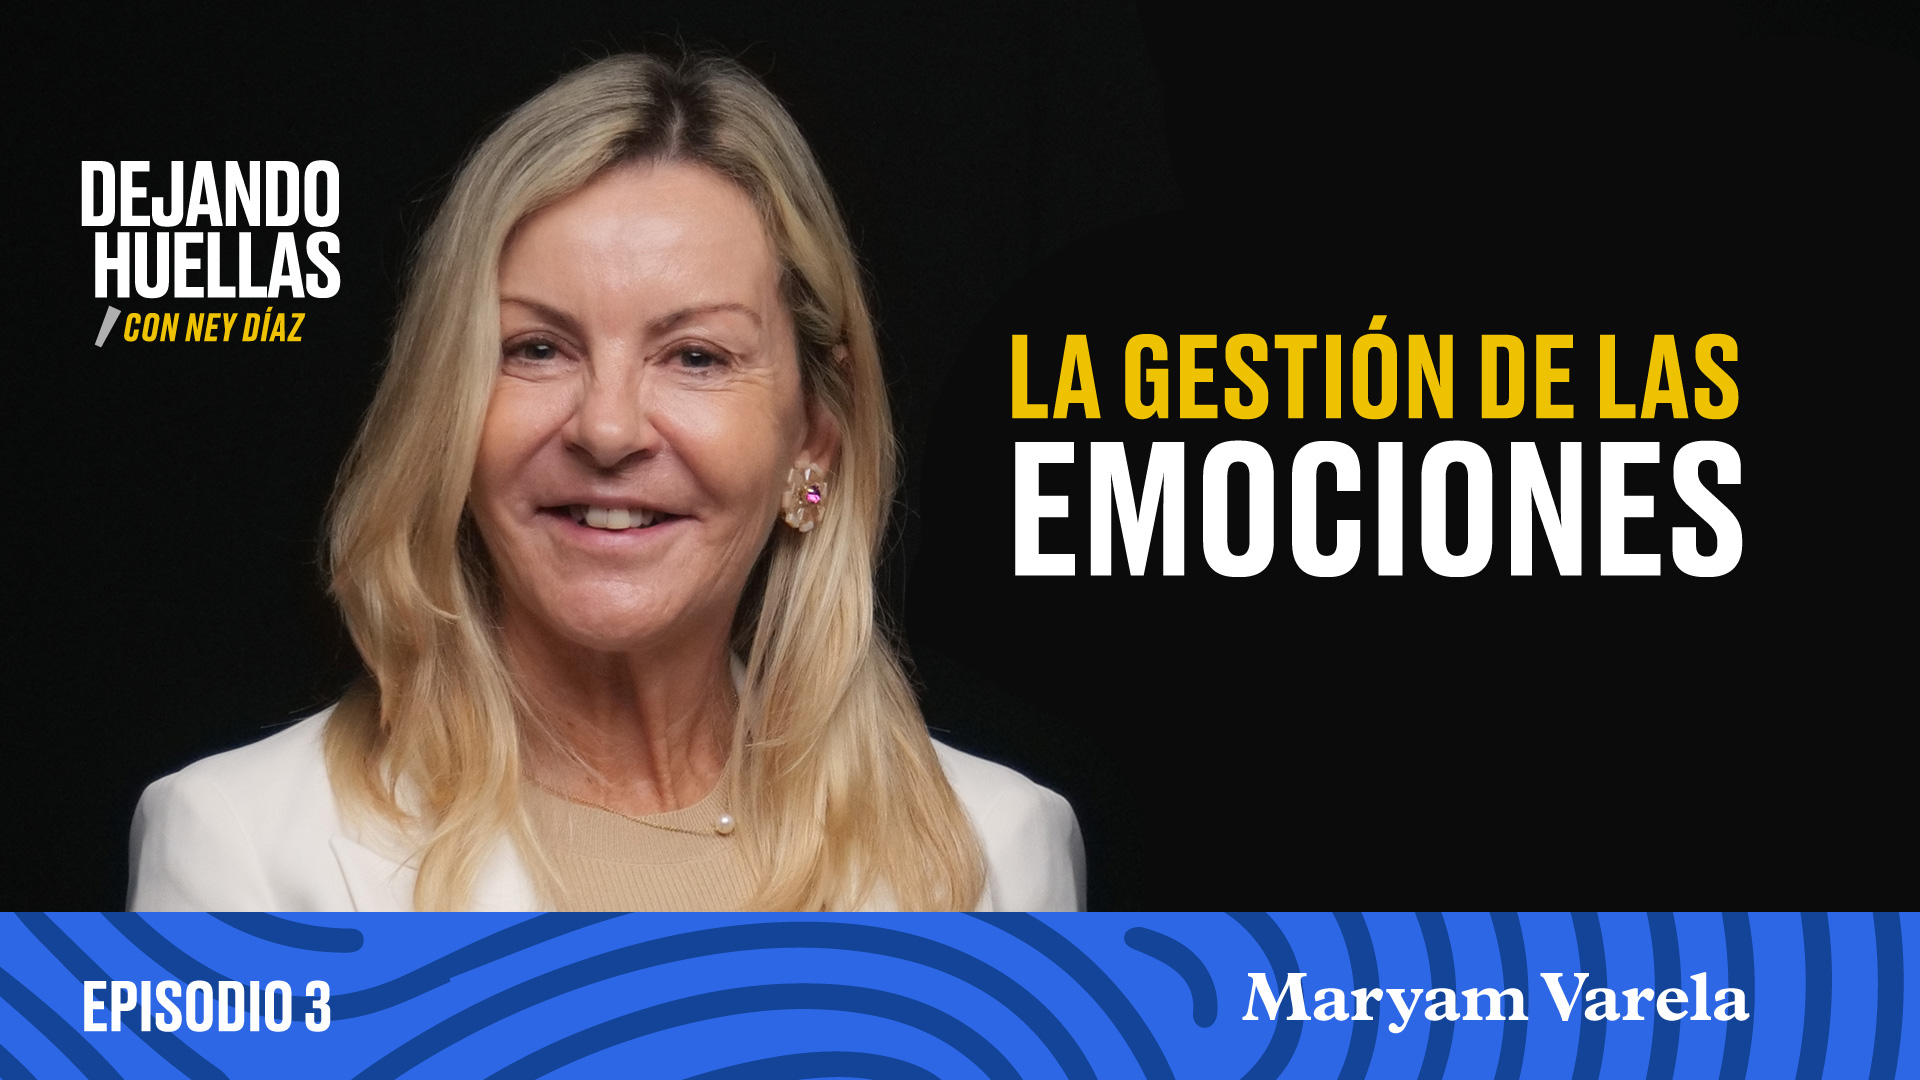 Episodio #3 - Maryam Varela: La gestión de las emociones [T1]